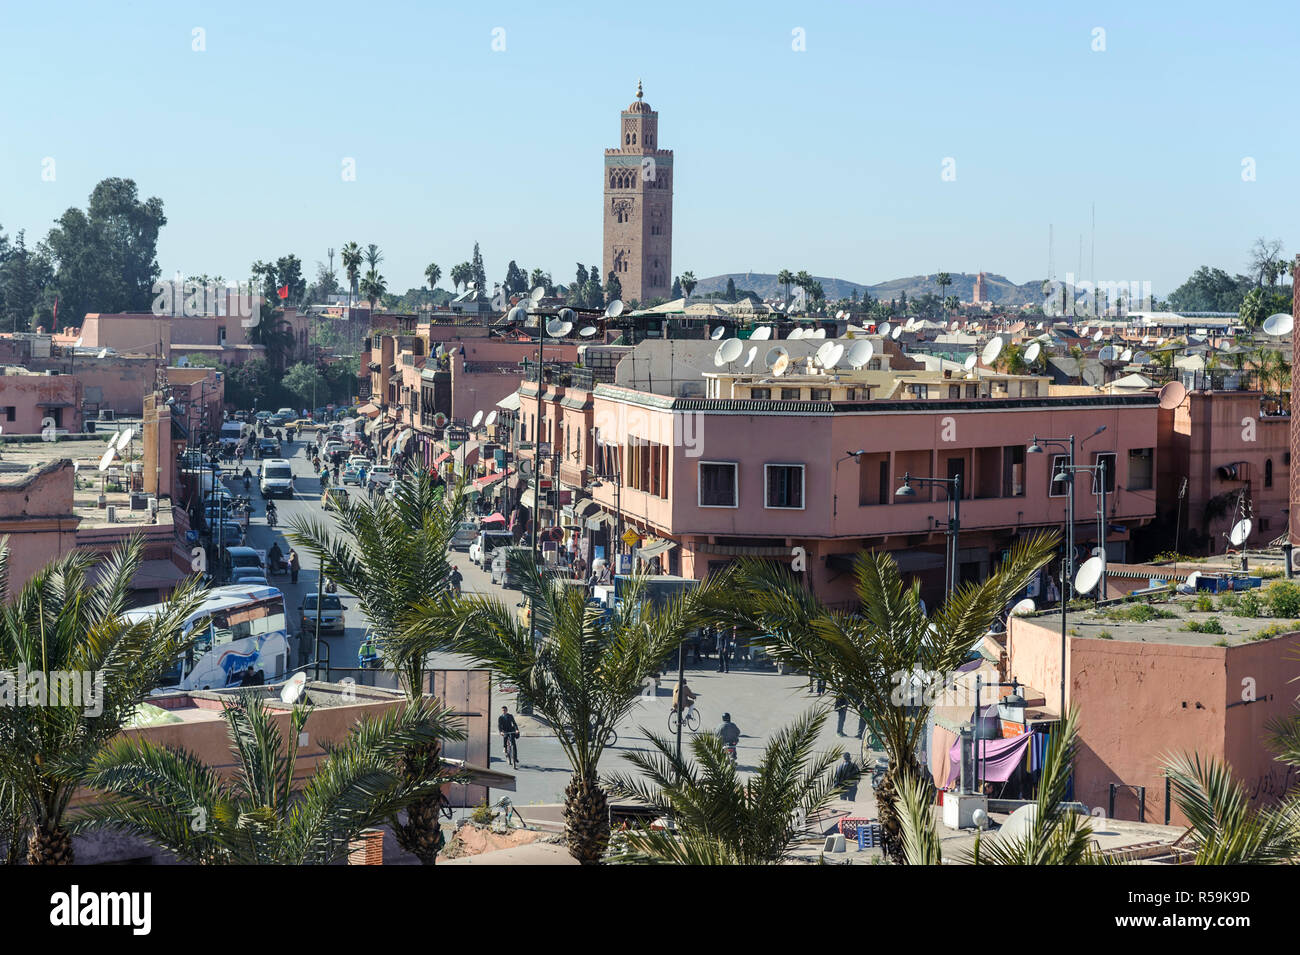 28-02-15, Marrakesch, Marokko. Blick nach Norden in Richtung der Koutoubia Moschee, vom südlichen Medina. Dächer mit Sat-Gerichte. Moderne b Stockfoto